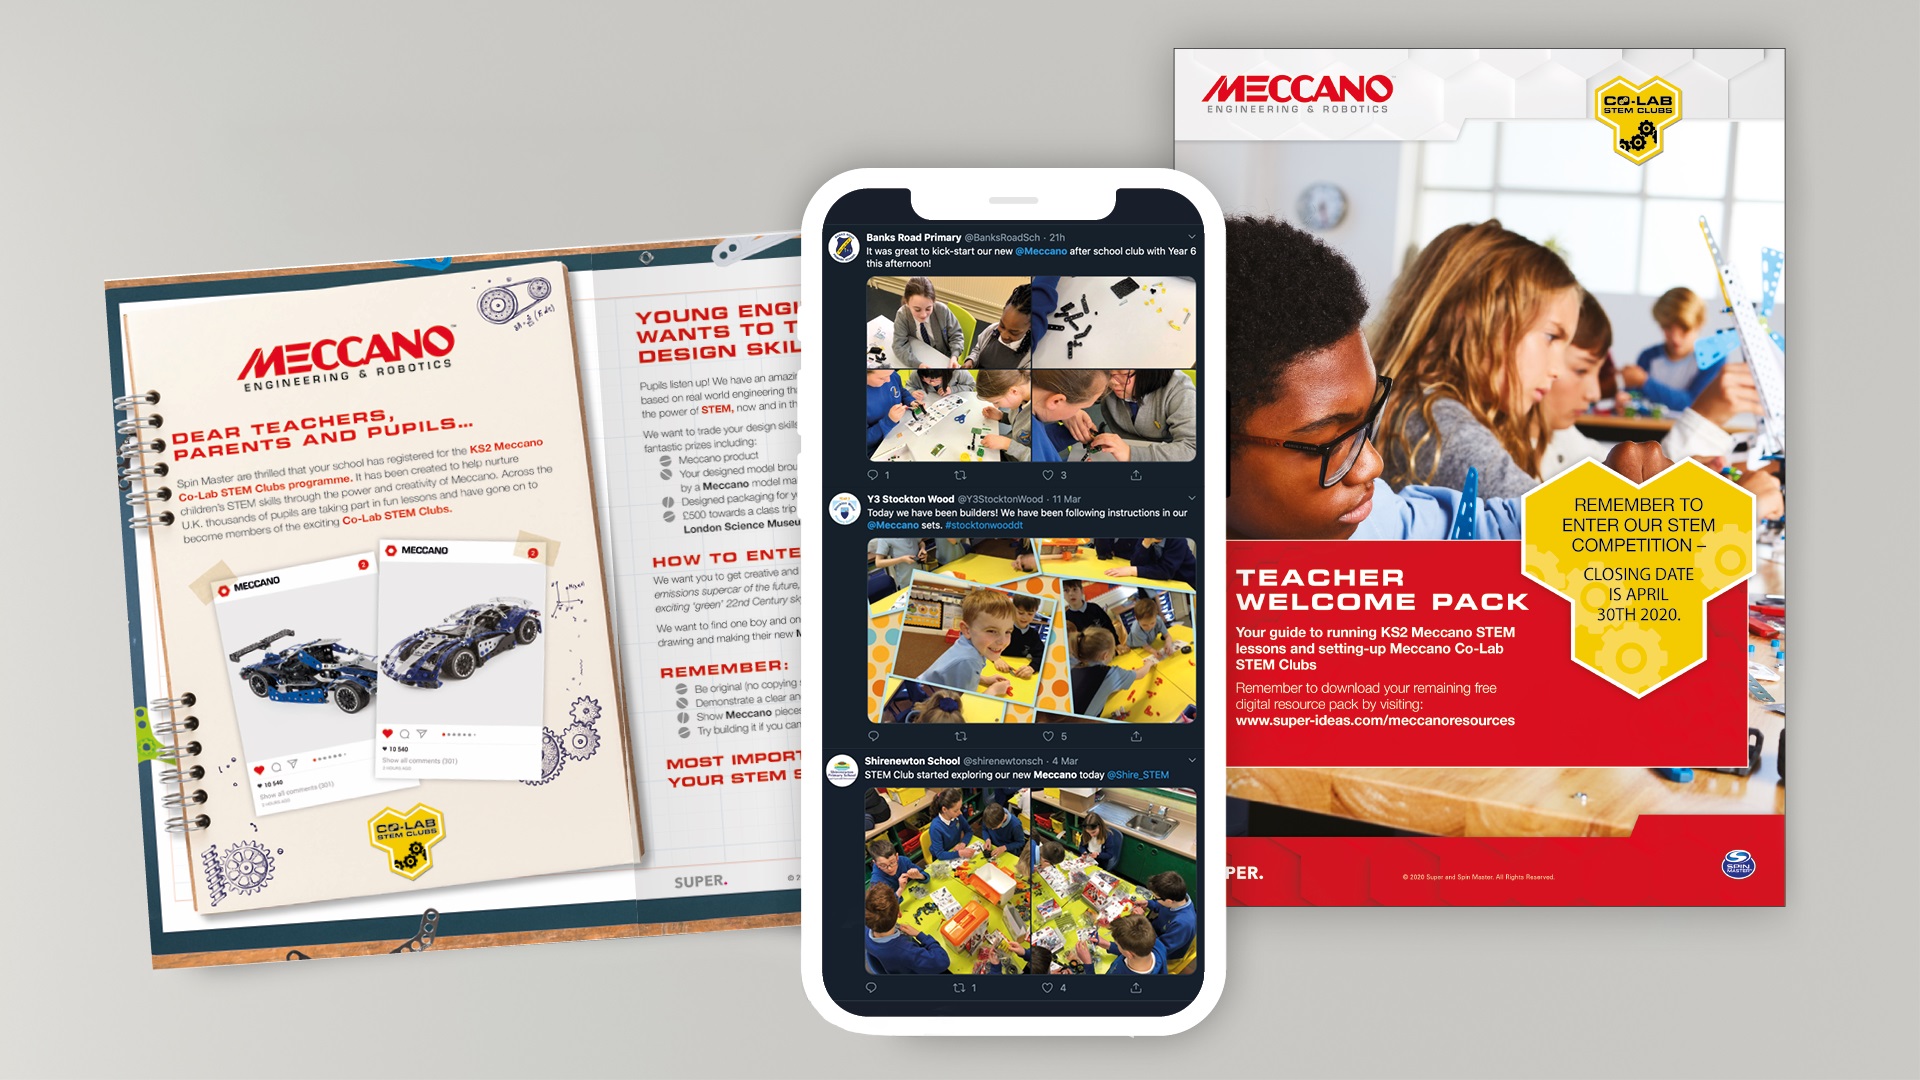 Meccano STEM school campaign with SUPER